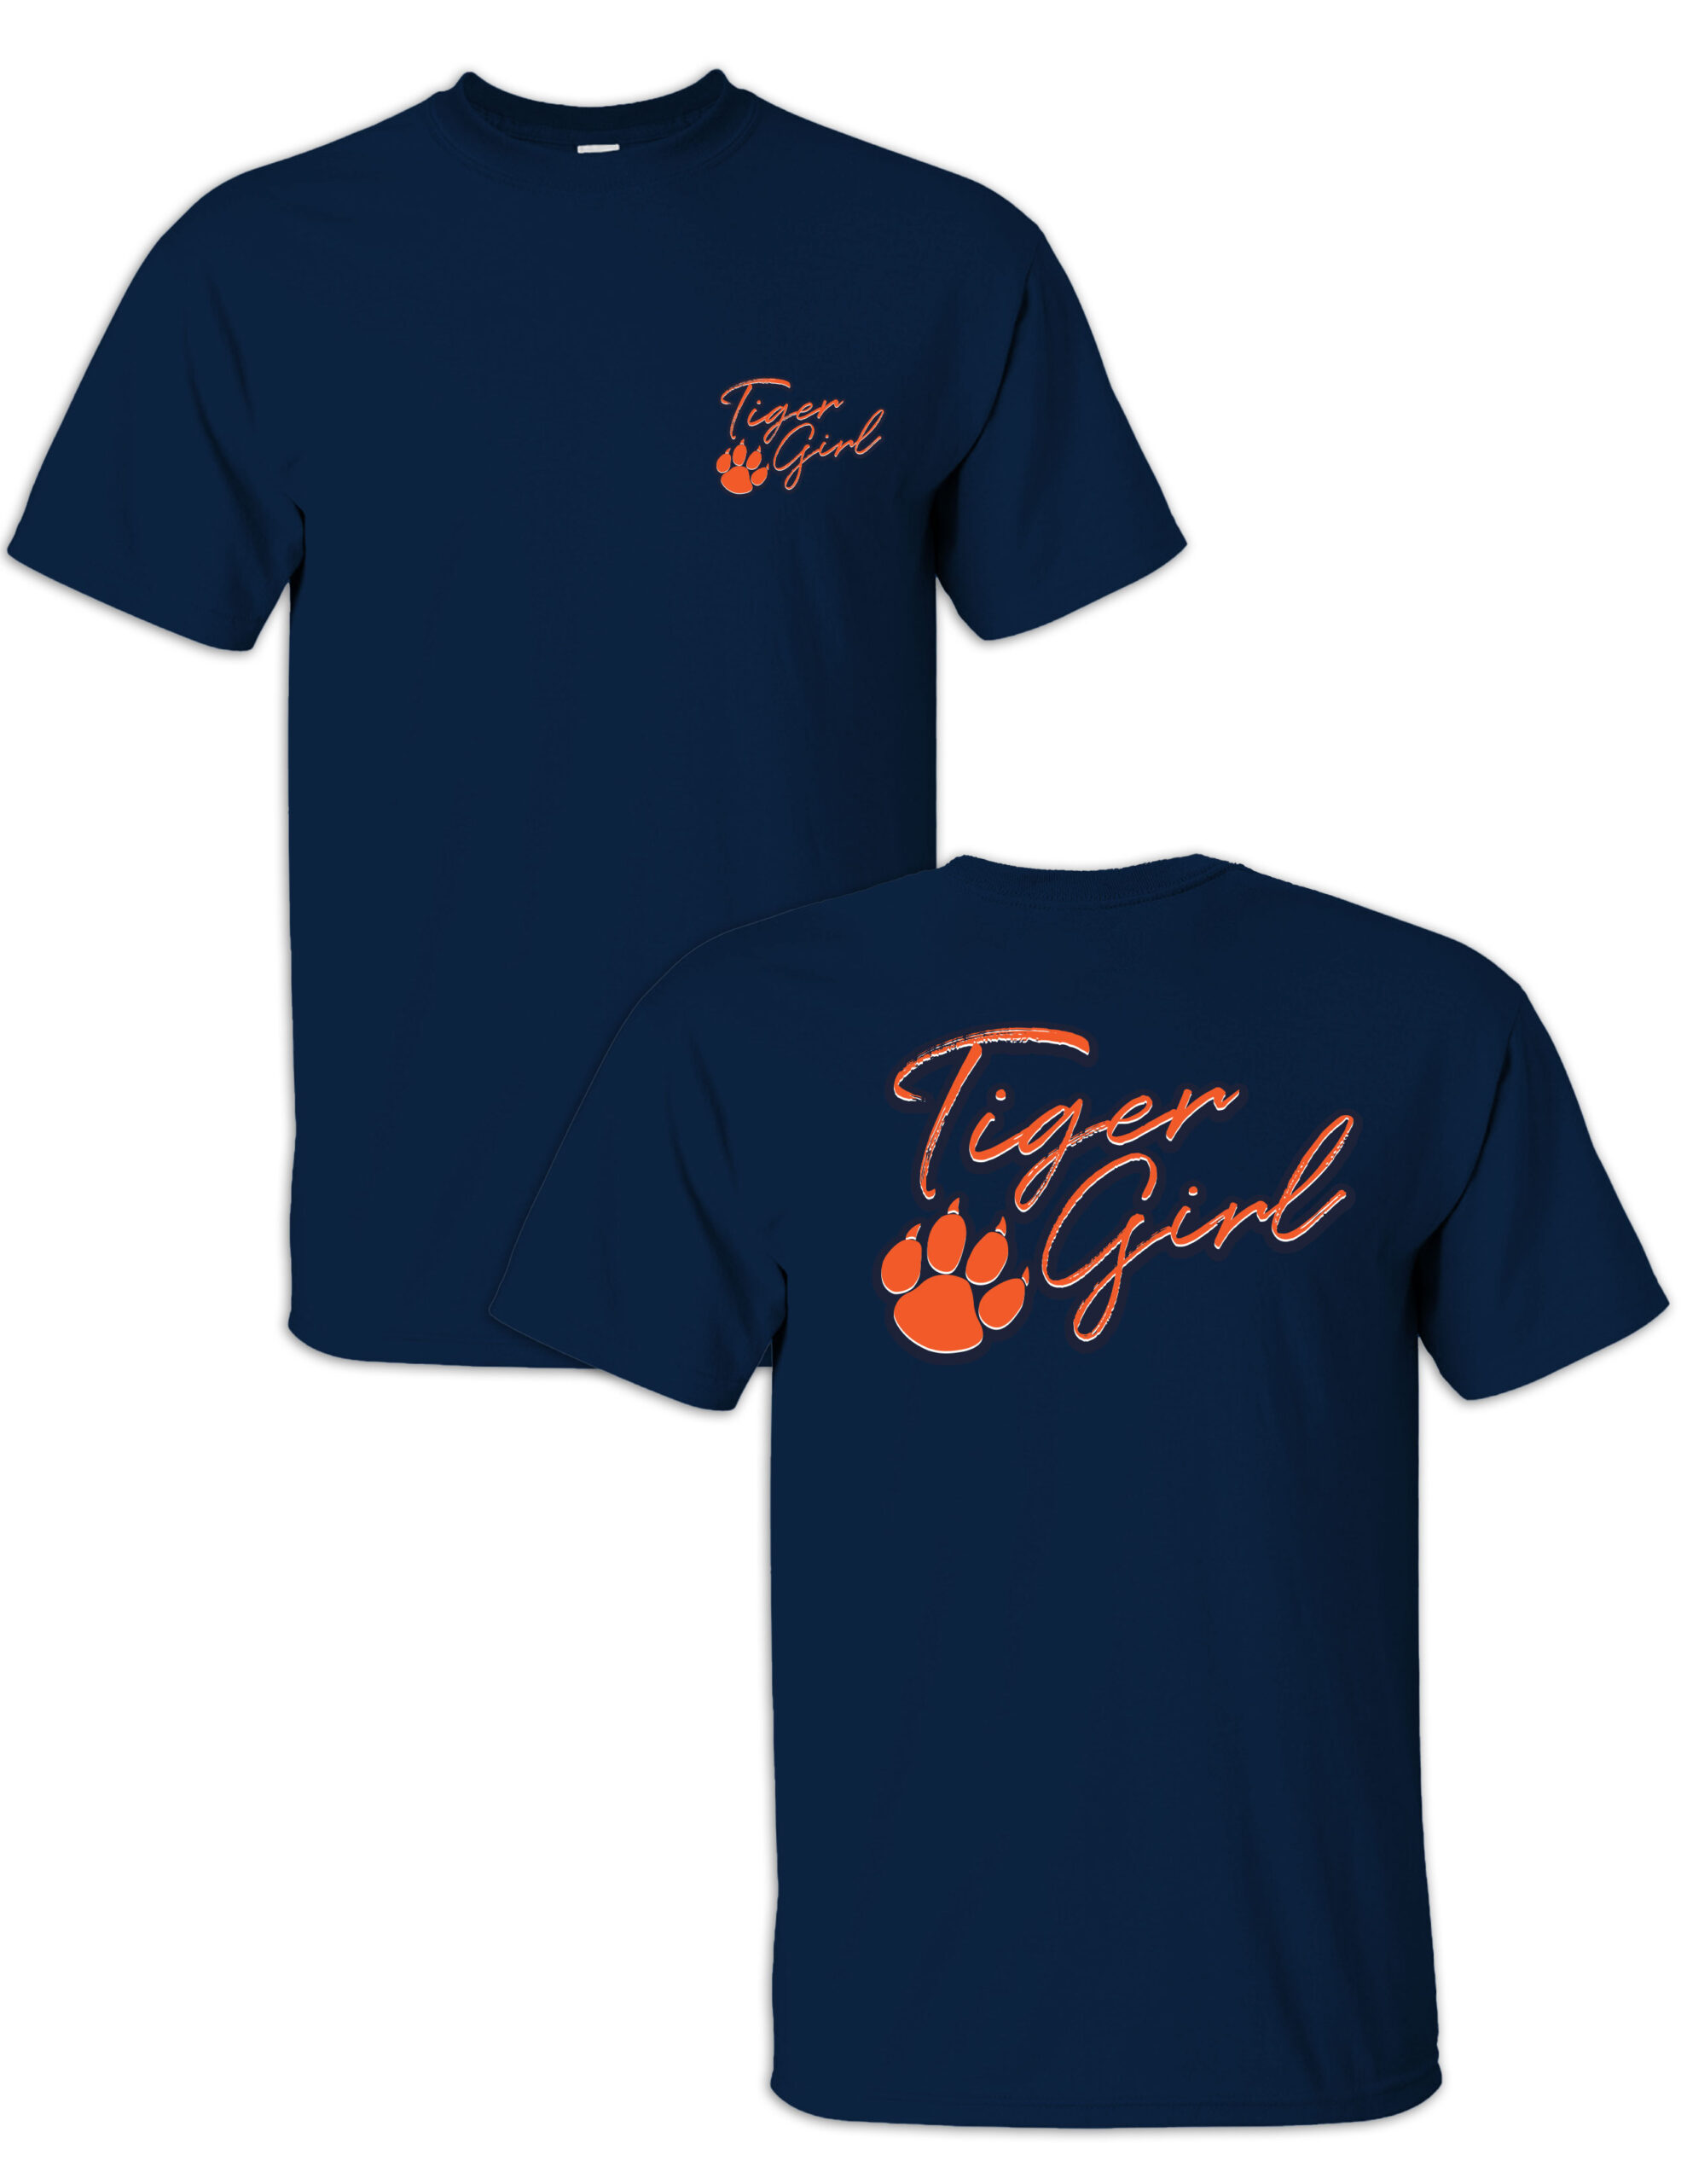 Detroit Tigers Sounds Like Team Spirit Girls Jersey Shirt